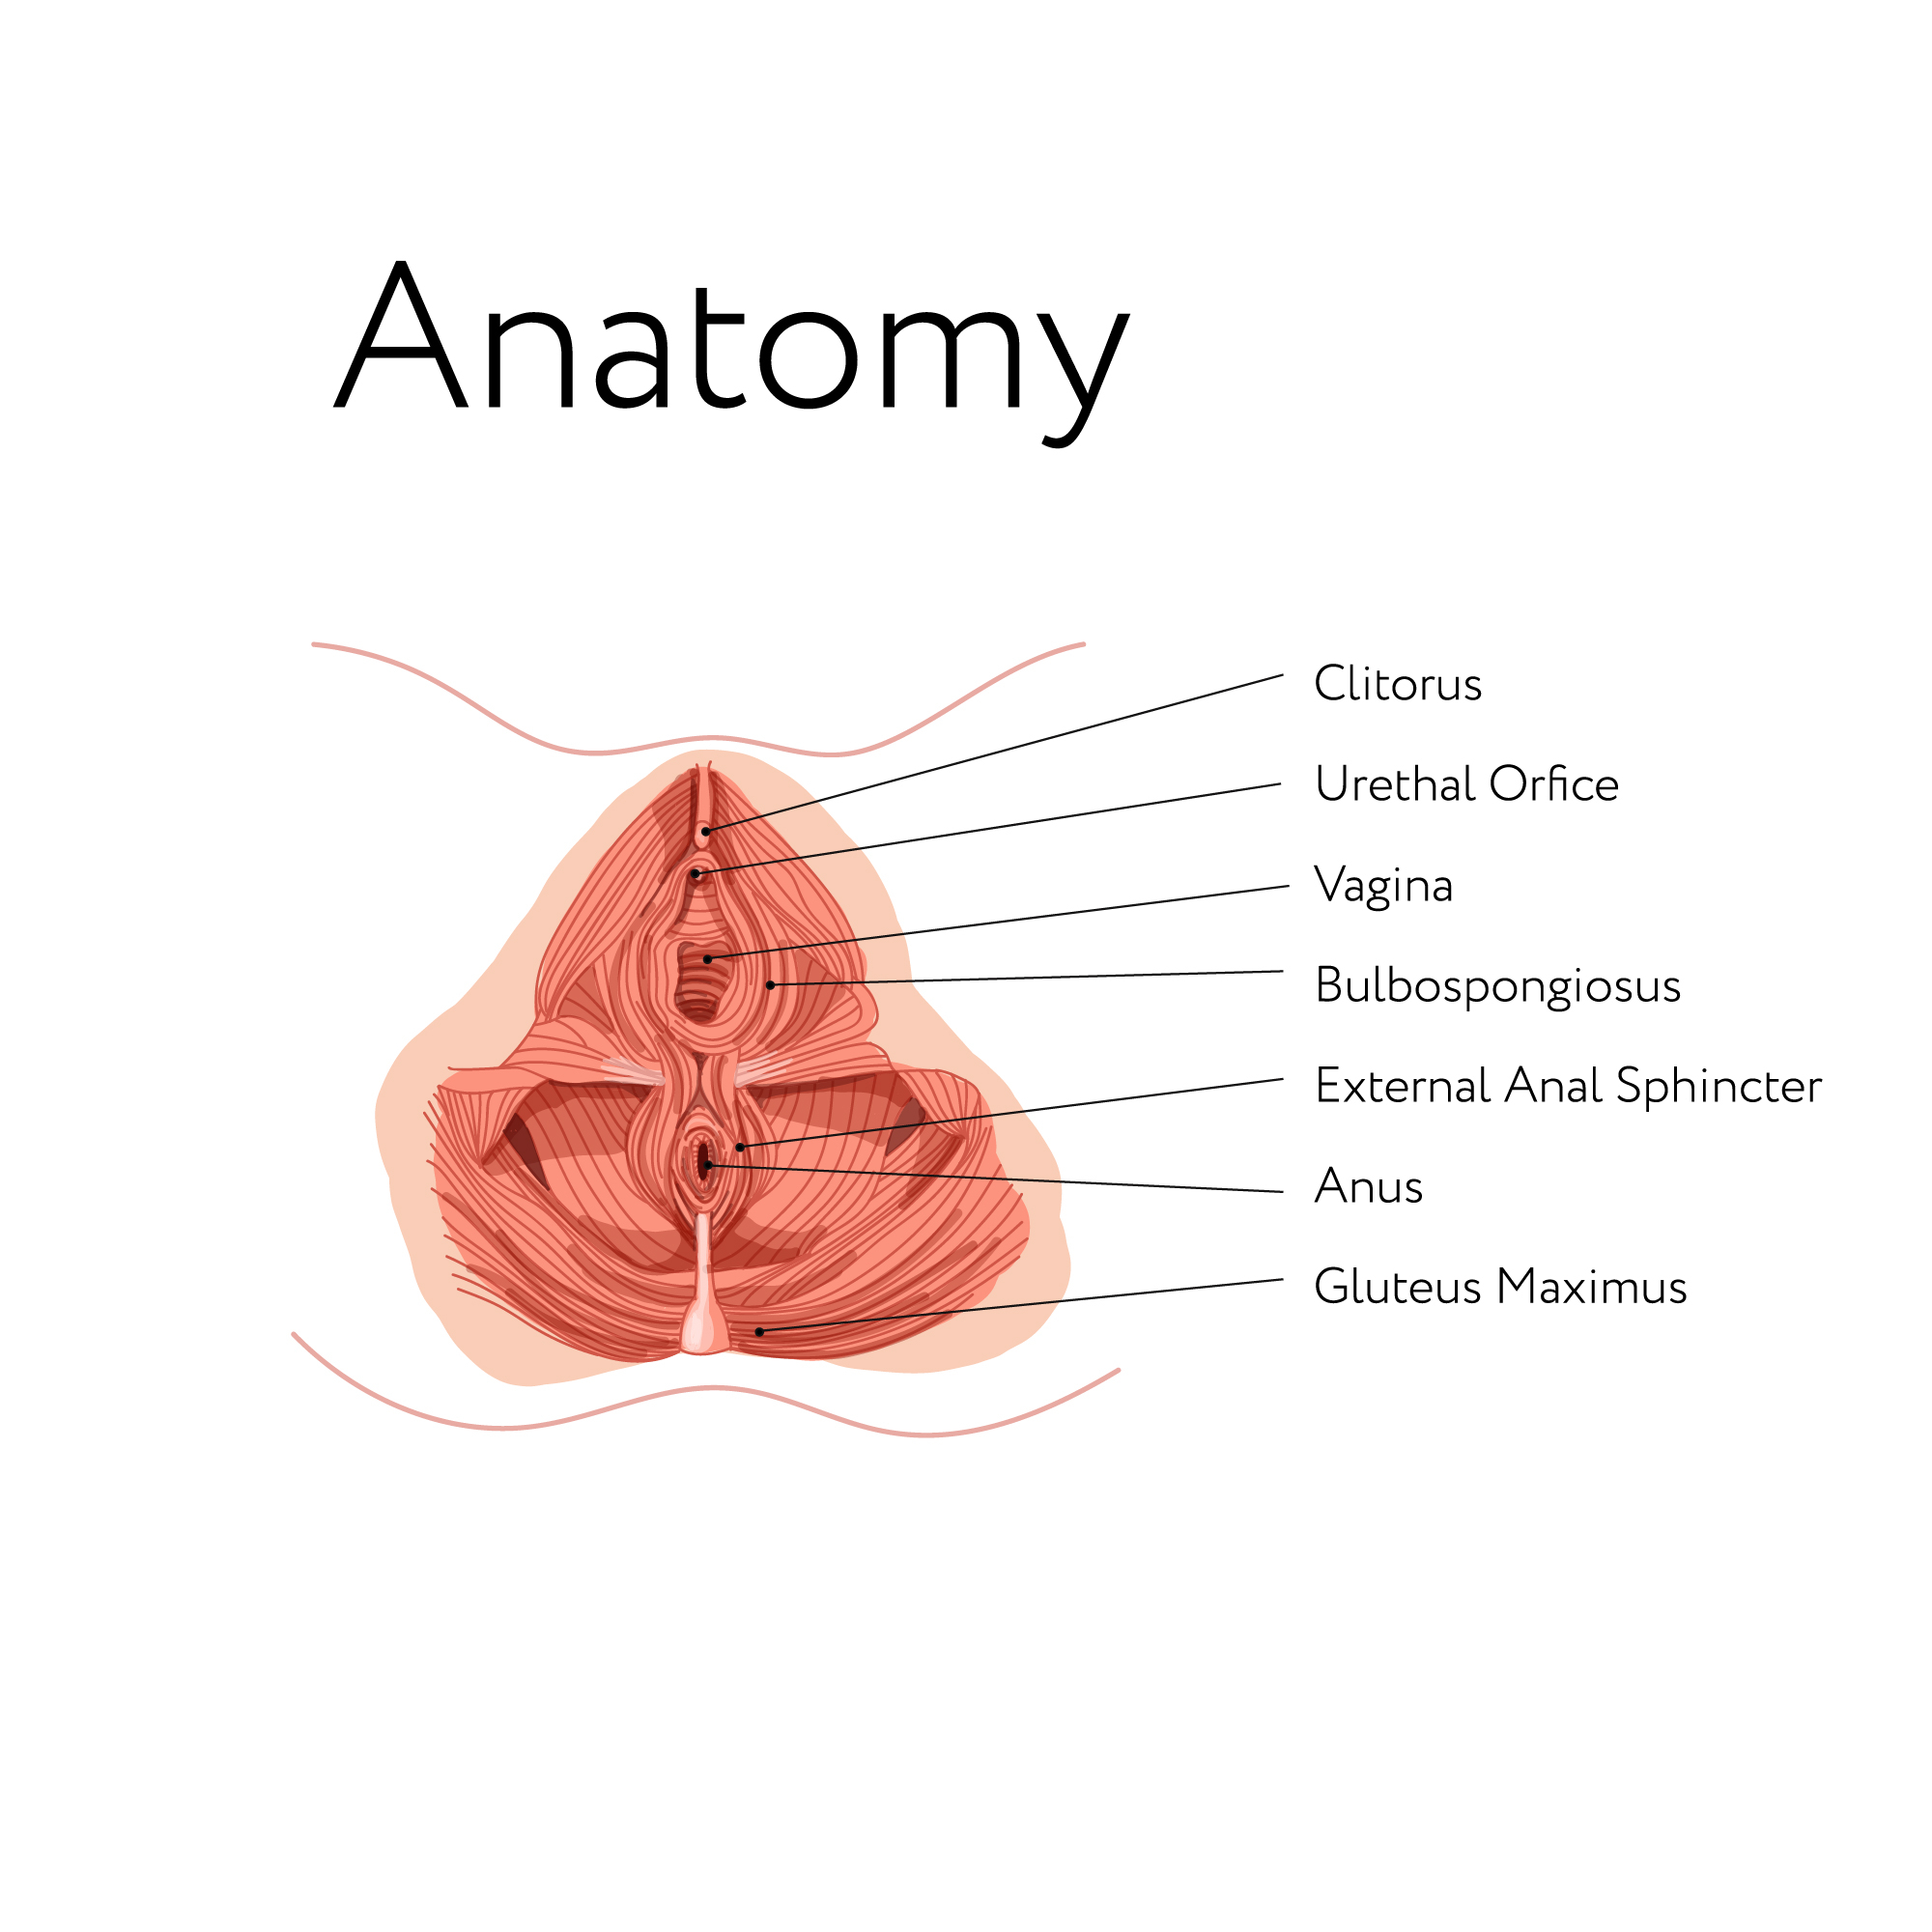 Mann anatomie beckenboden weibliche Anatomie